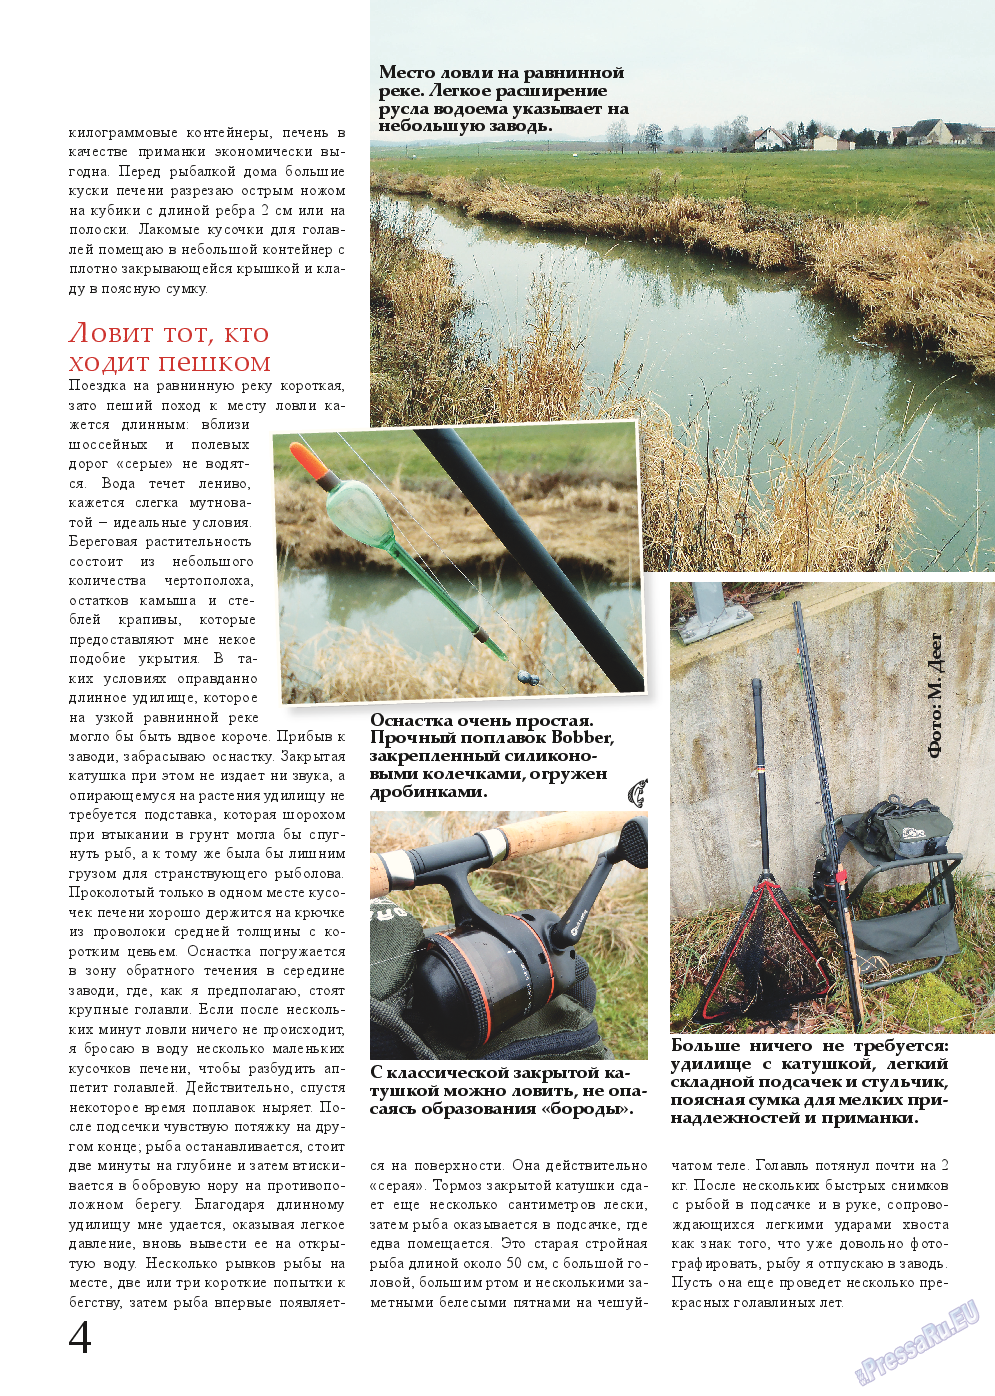 Рыбалка Plus, журнал. 2014 №11 стр.4